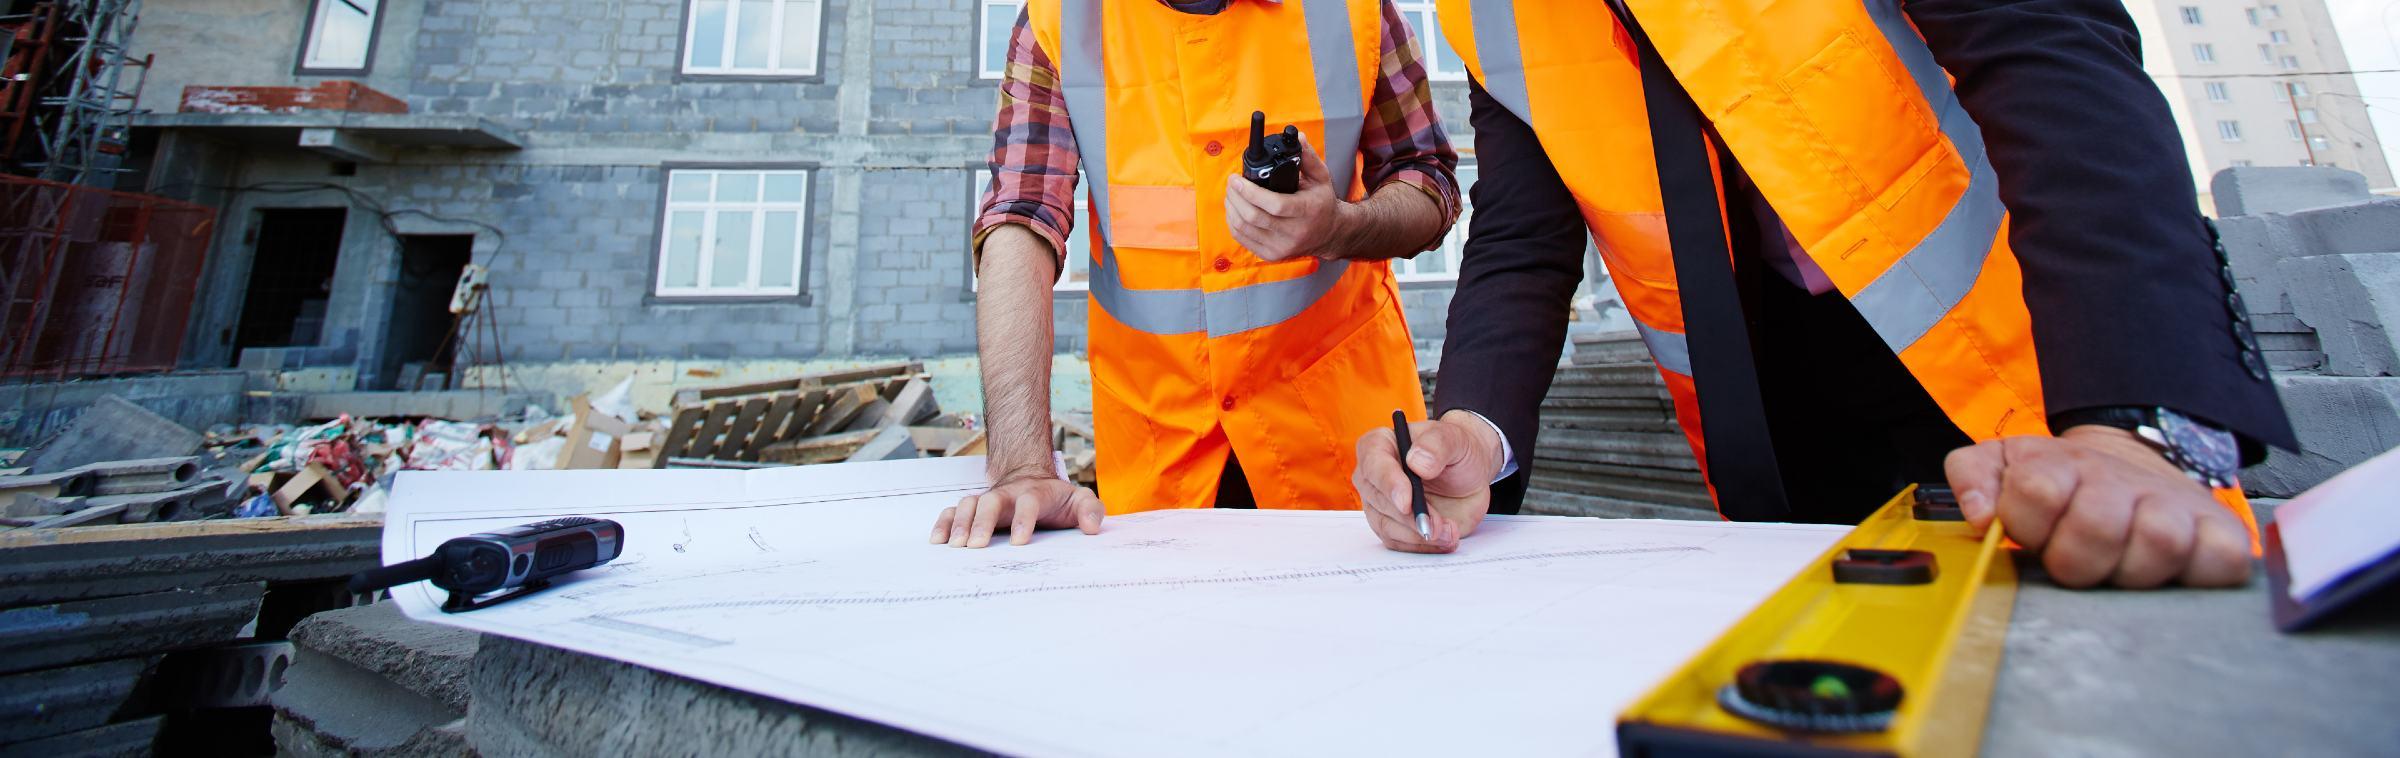 Des professionnels du bâtiment travaillent sur un chantier en construction